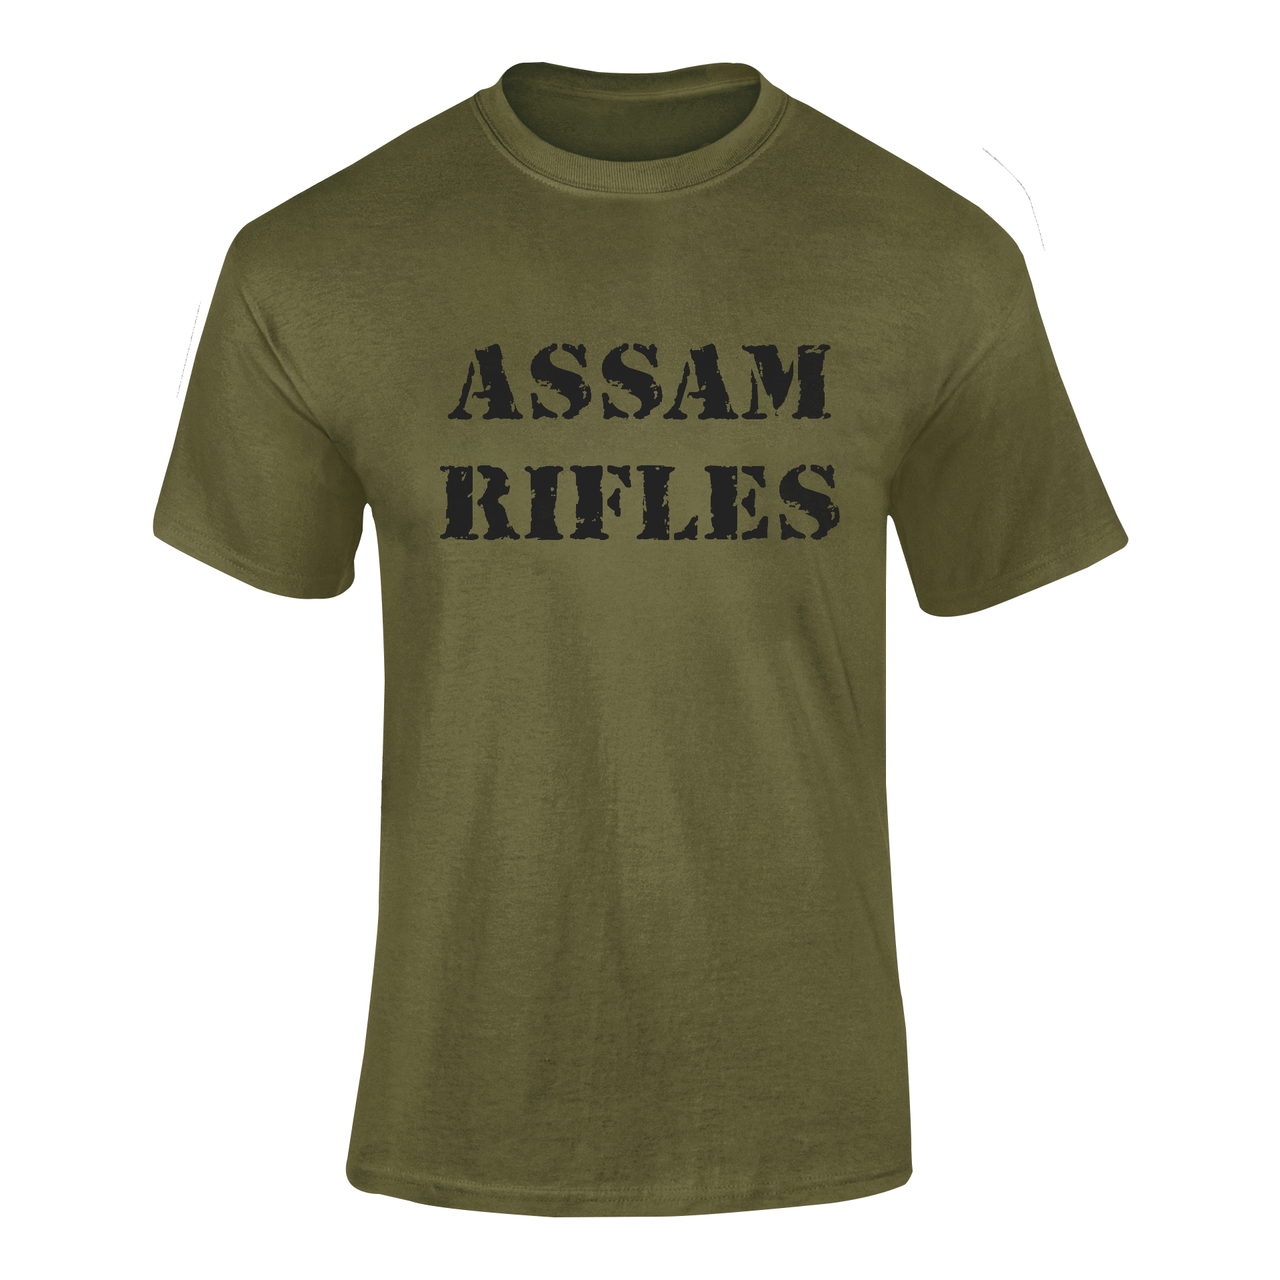 Military T-shirt - Assam Rifles (Men)